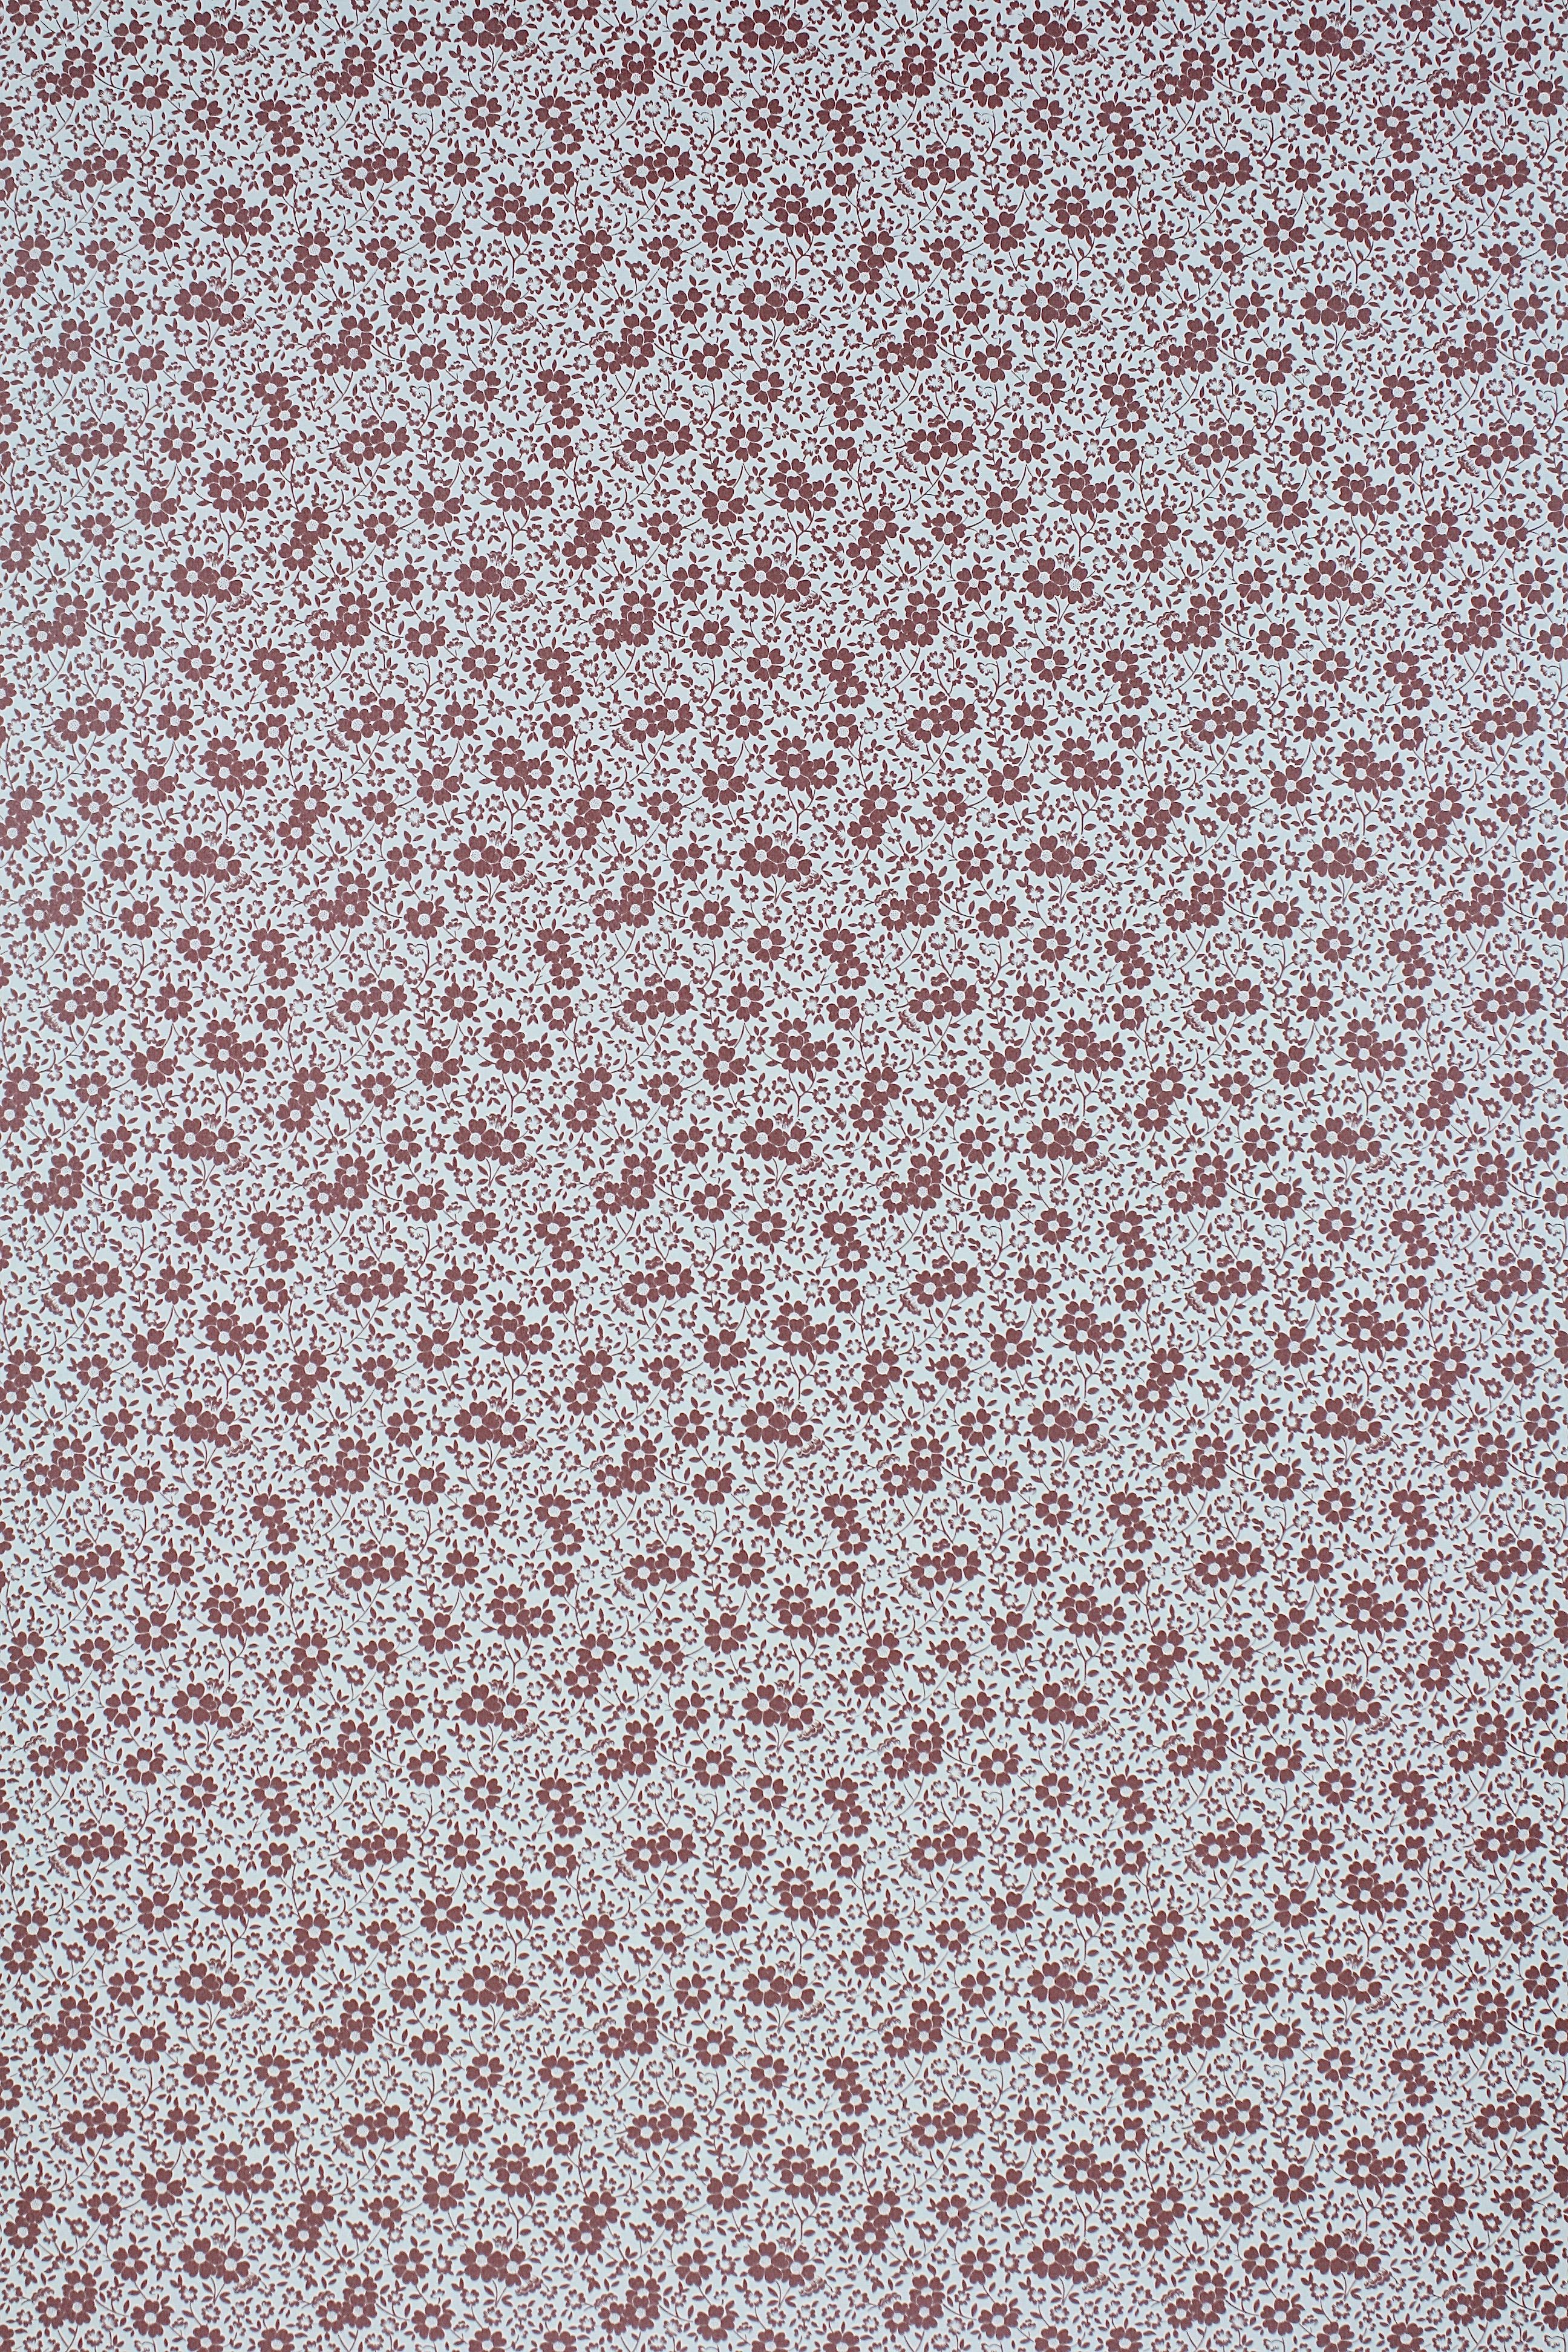 Little Flower Pattern Wallpaper